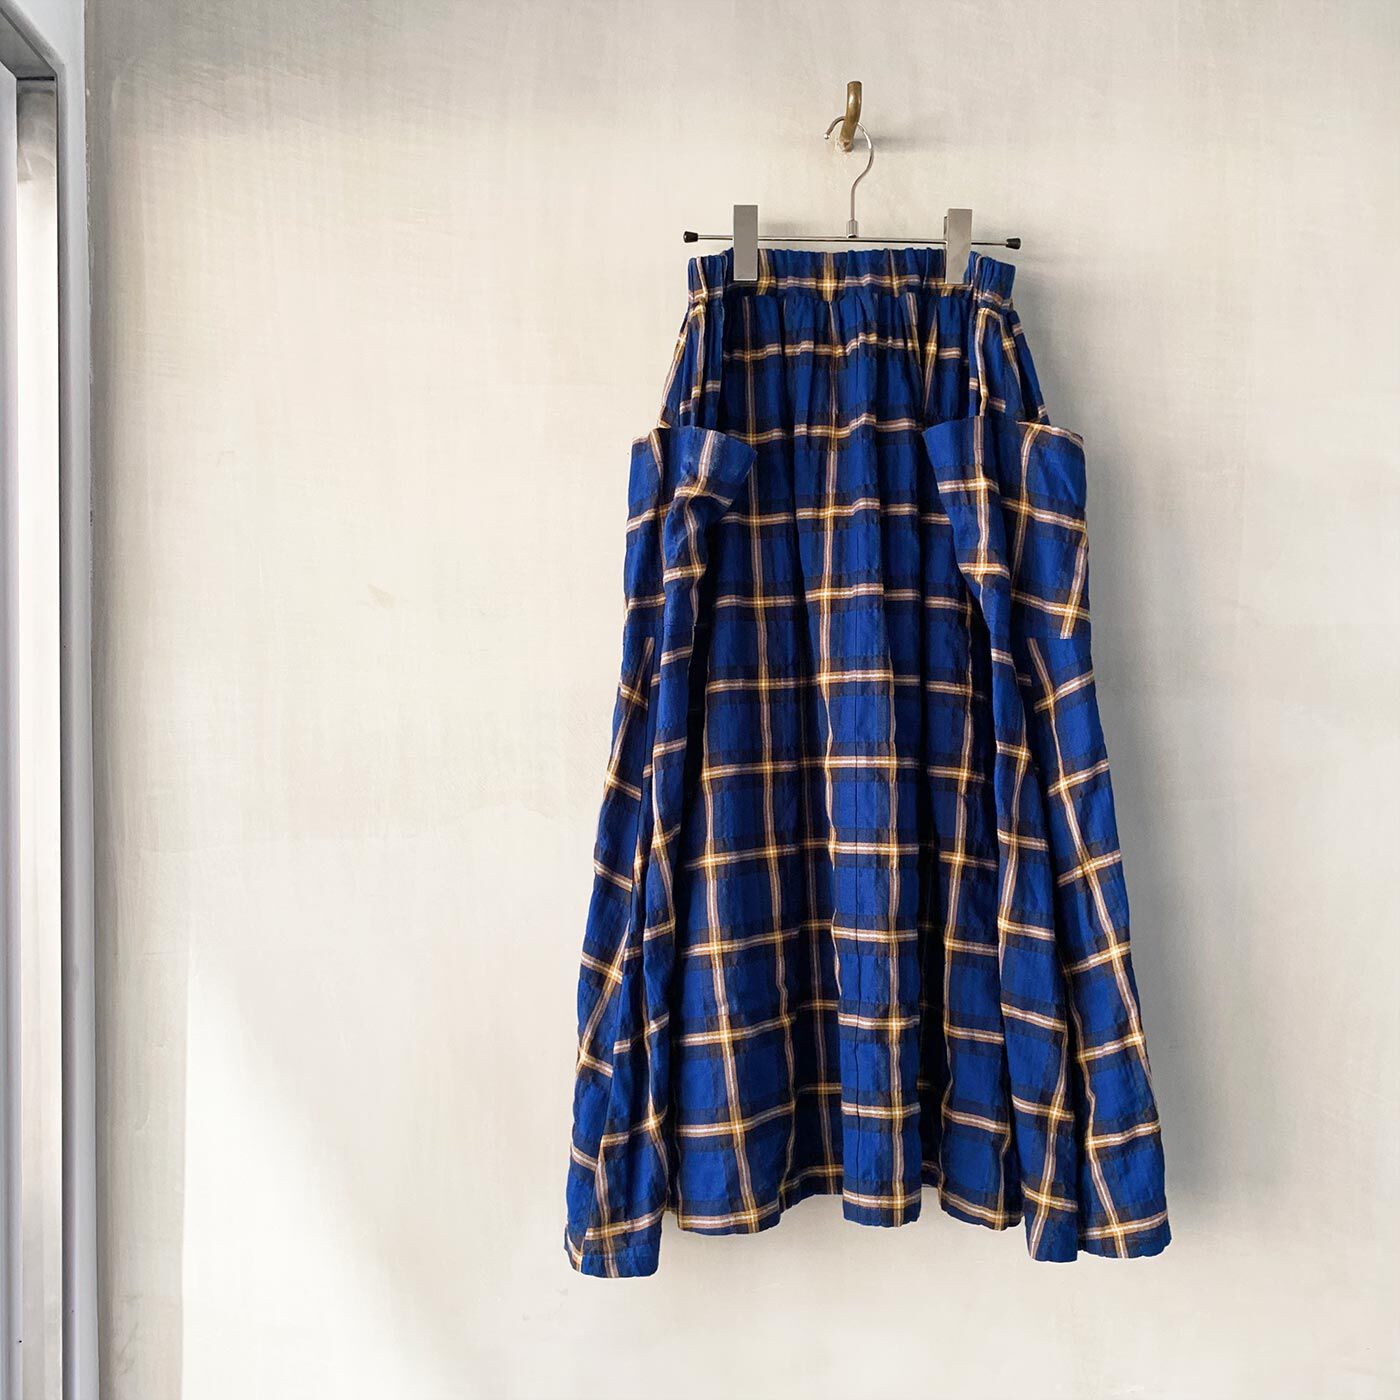 エルメント|el:ment　ヘリンボーンチェックの播州織生地が魅力 マルチポケットロングスカート